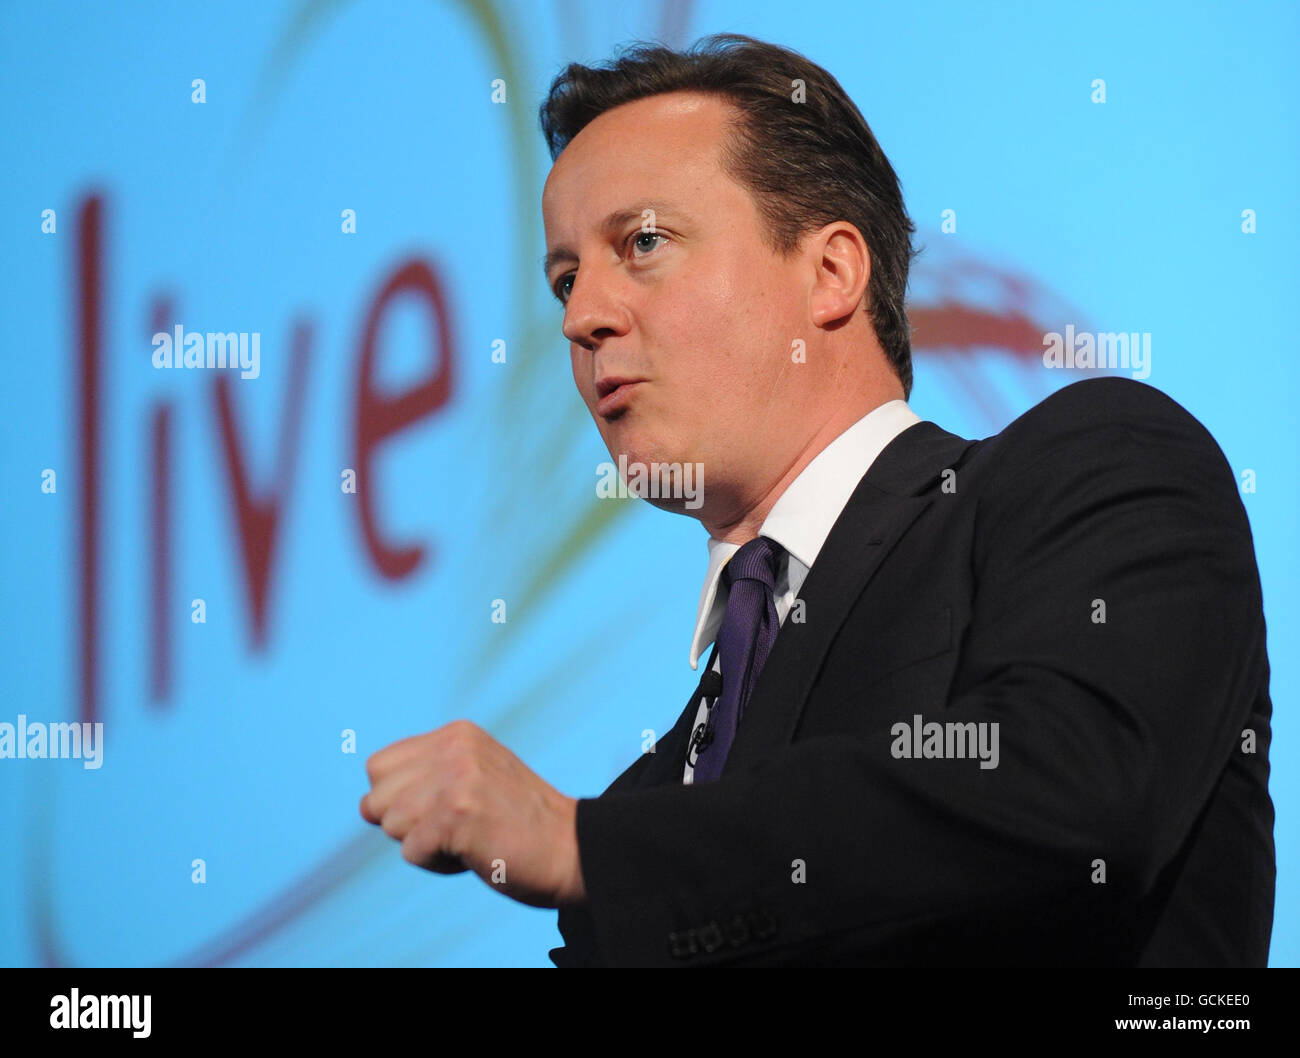 Premierminister David Cameron spricht mit Beamten auf der Konferenz „Civil Service Live“ im Londoner Olympia Exhibition Centre. Stockfoto